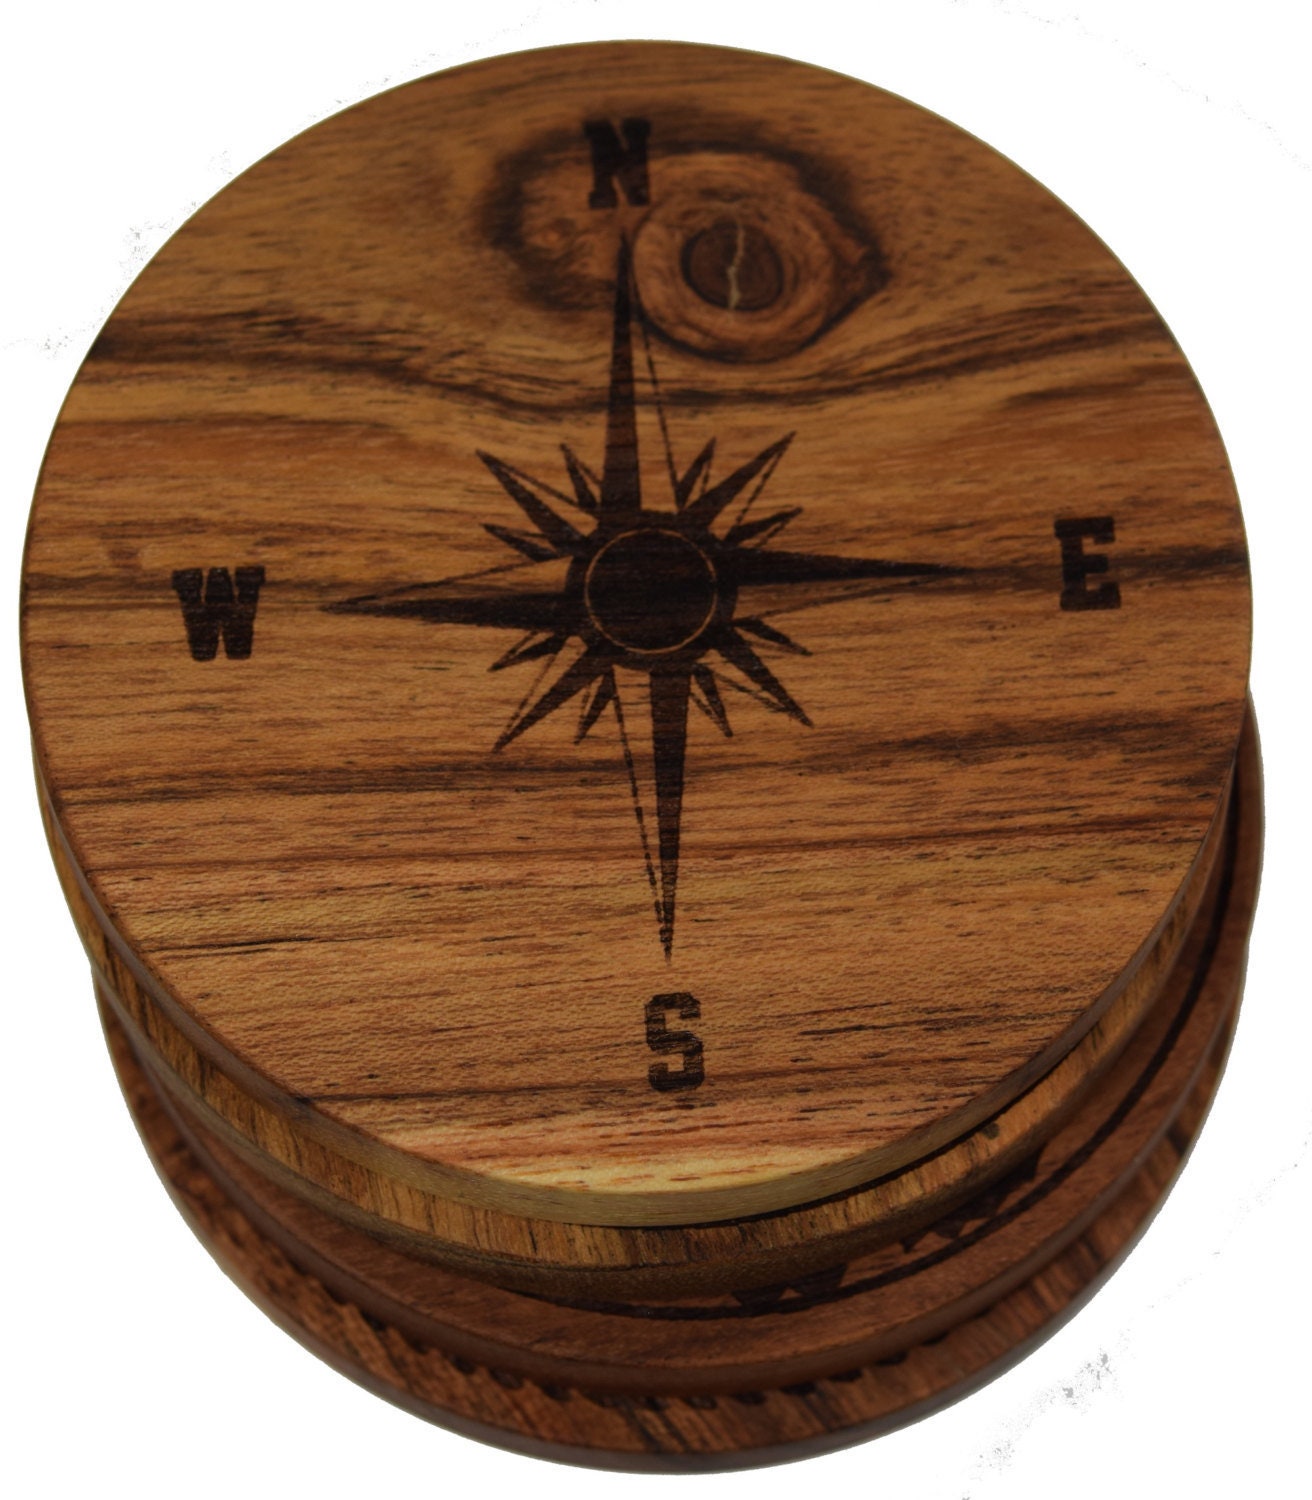 Компас из картона. Компас из фанеры. Пиратский компас из фанеры. Часы компас из фанеры. Компас из дерева своими руками.